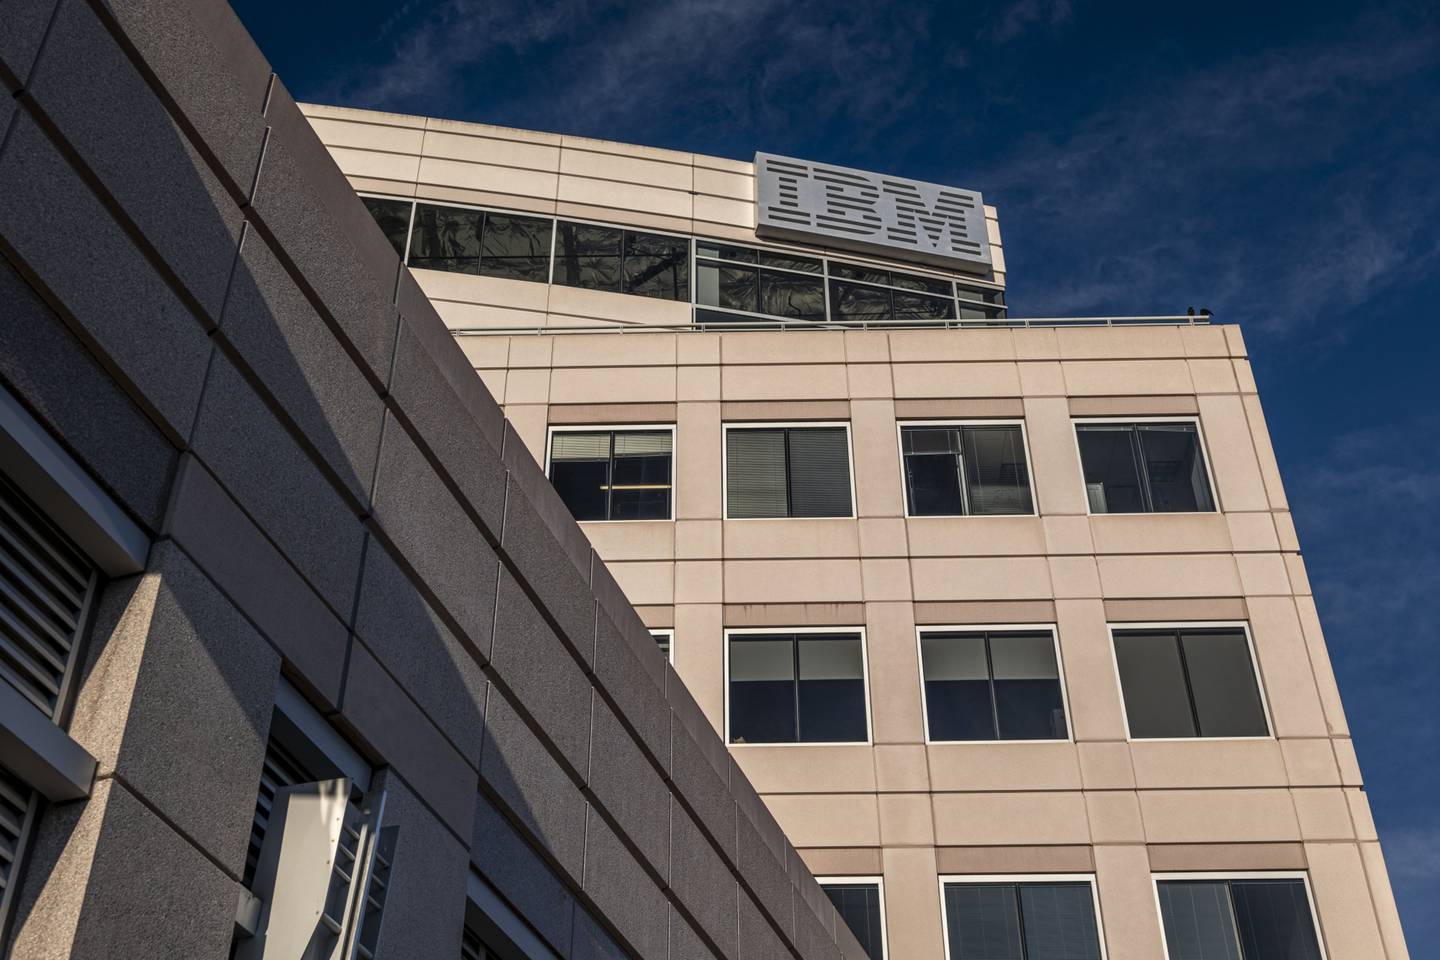 La oficina de IBM en Foster City, California, EE.UU.